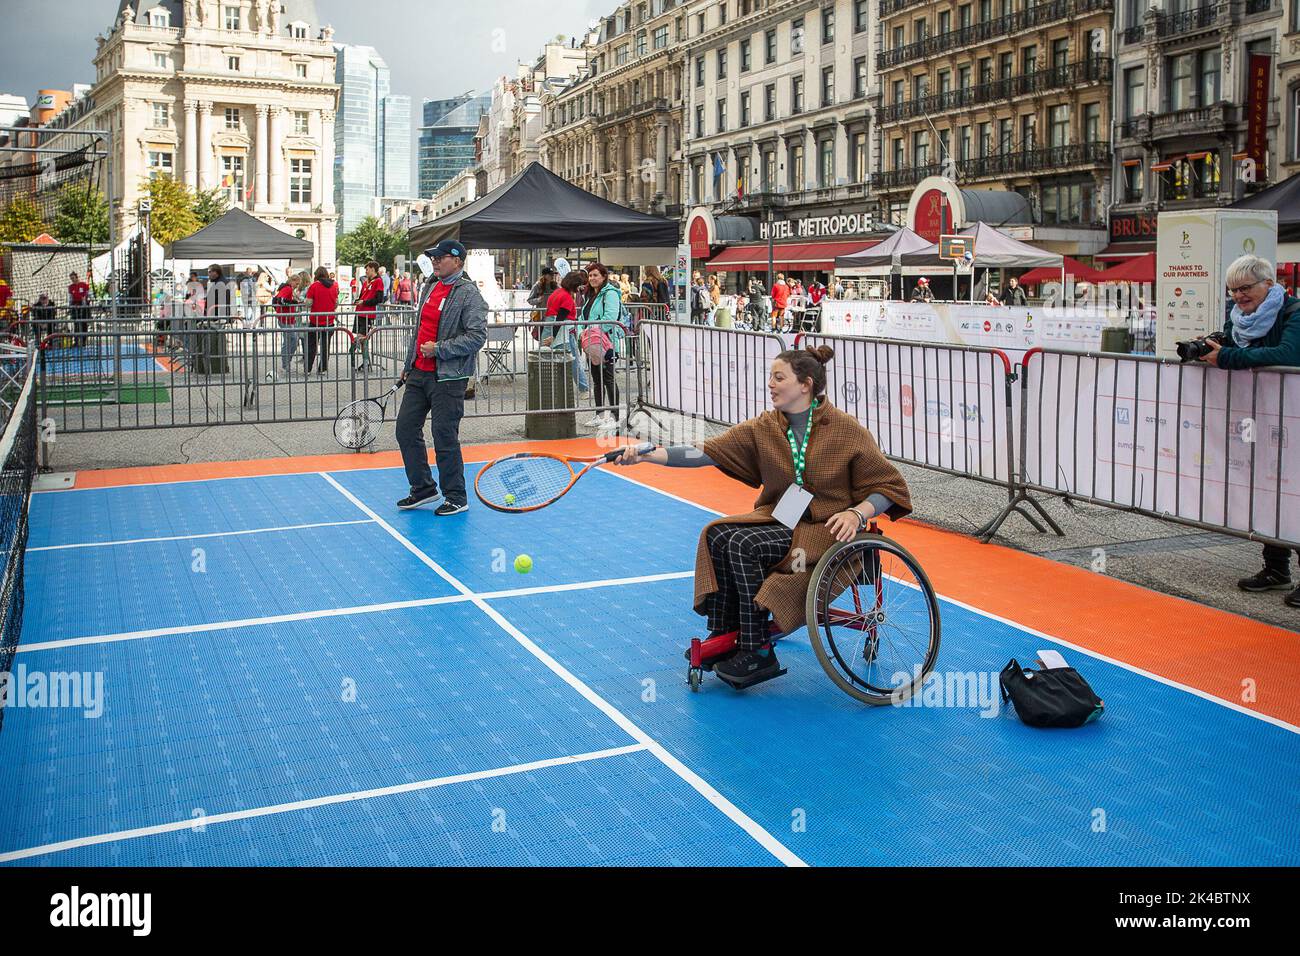 L'immagine mostra l'evento 'Road to Paris' in occasione del Paralympic Day 2022, sabato 01 ottobre 2022 a Bruxelles, in attesa dei Giochi Paralympic 2024 di Parigi. FOTO DI BELGA JAMES ARTHUR GEKIERE Foto Stock